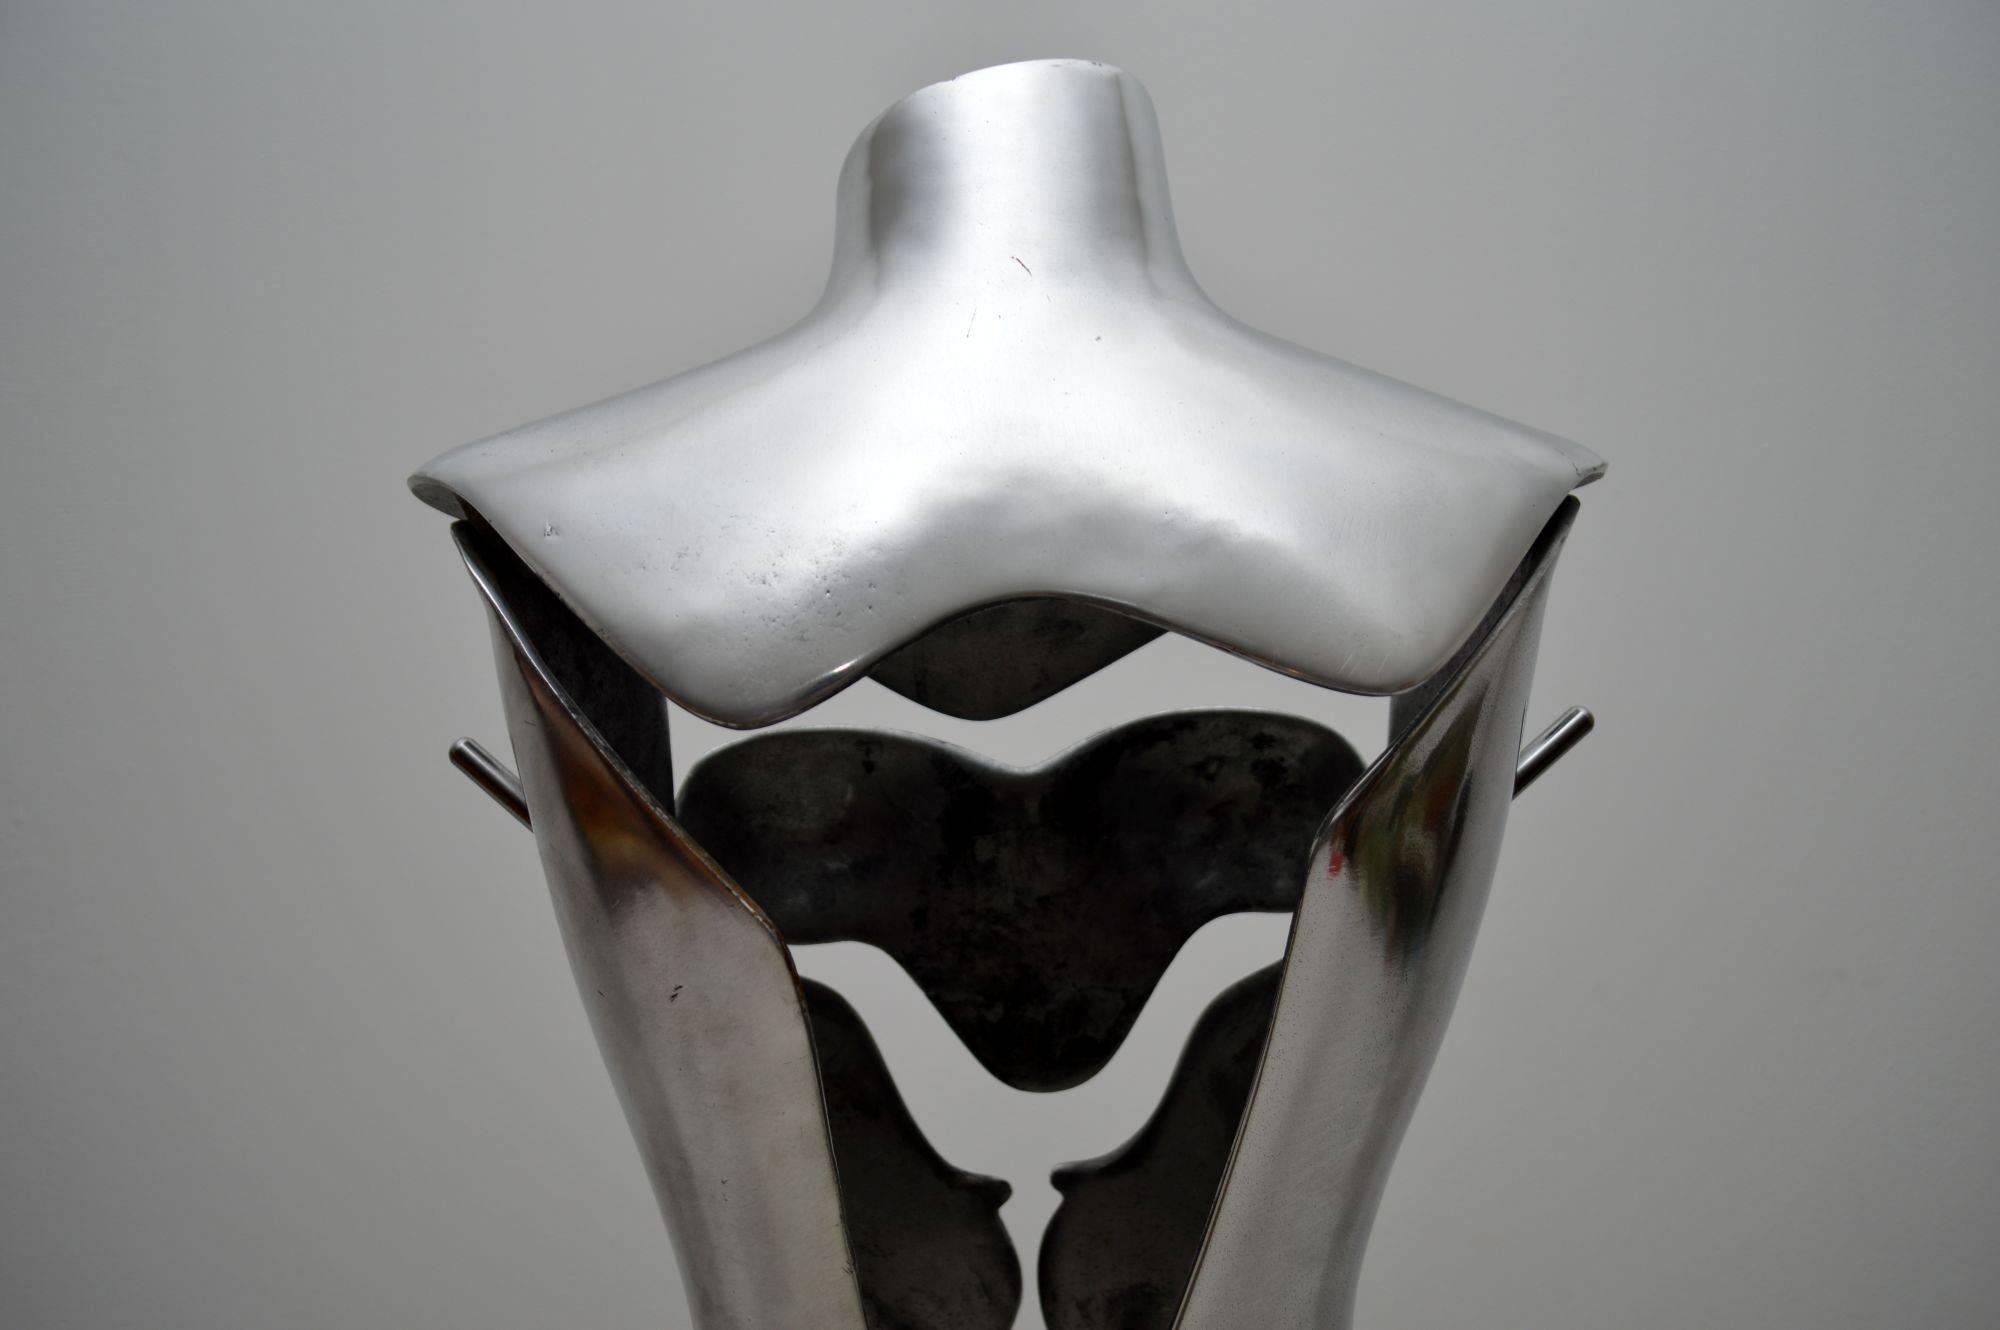 Aluminum Aluminium and Steel Mannequin designed by Nigel Coates